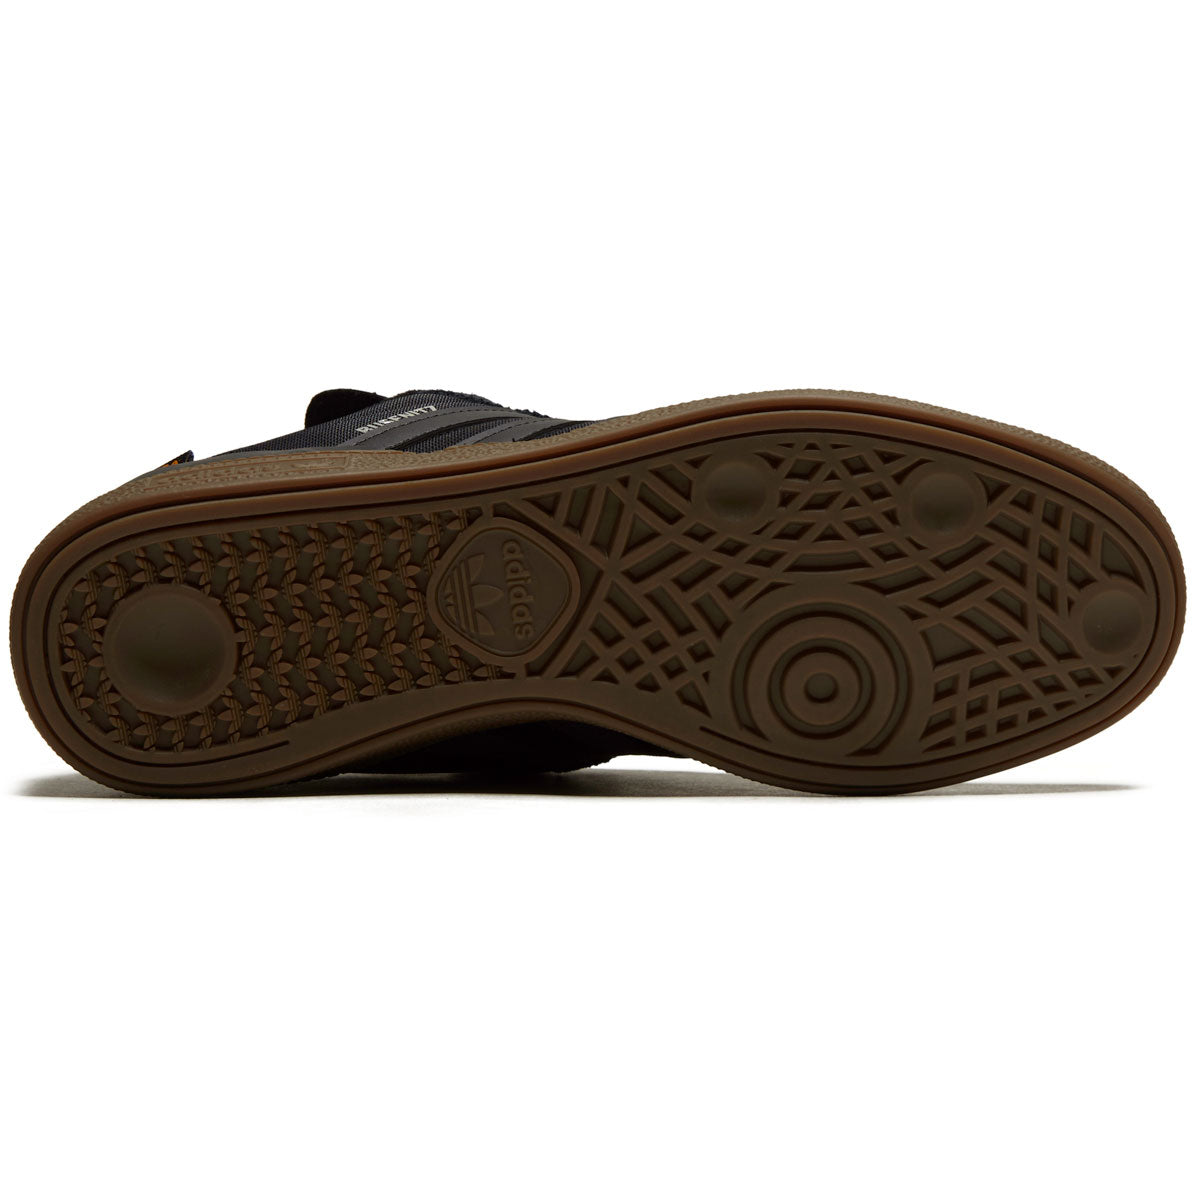 Adidas Busenitz Shoes - Core Black/Core Black/Gum image 4